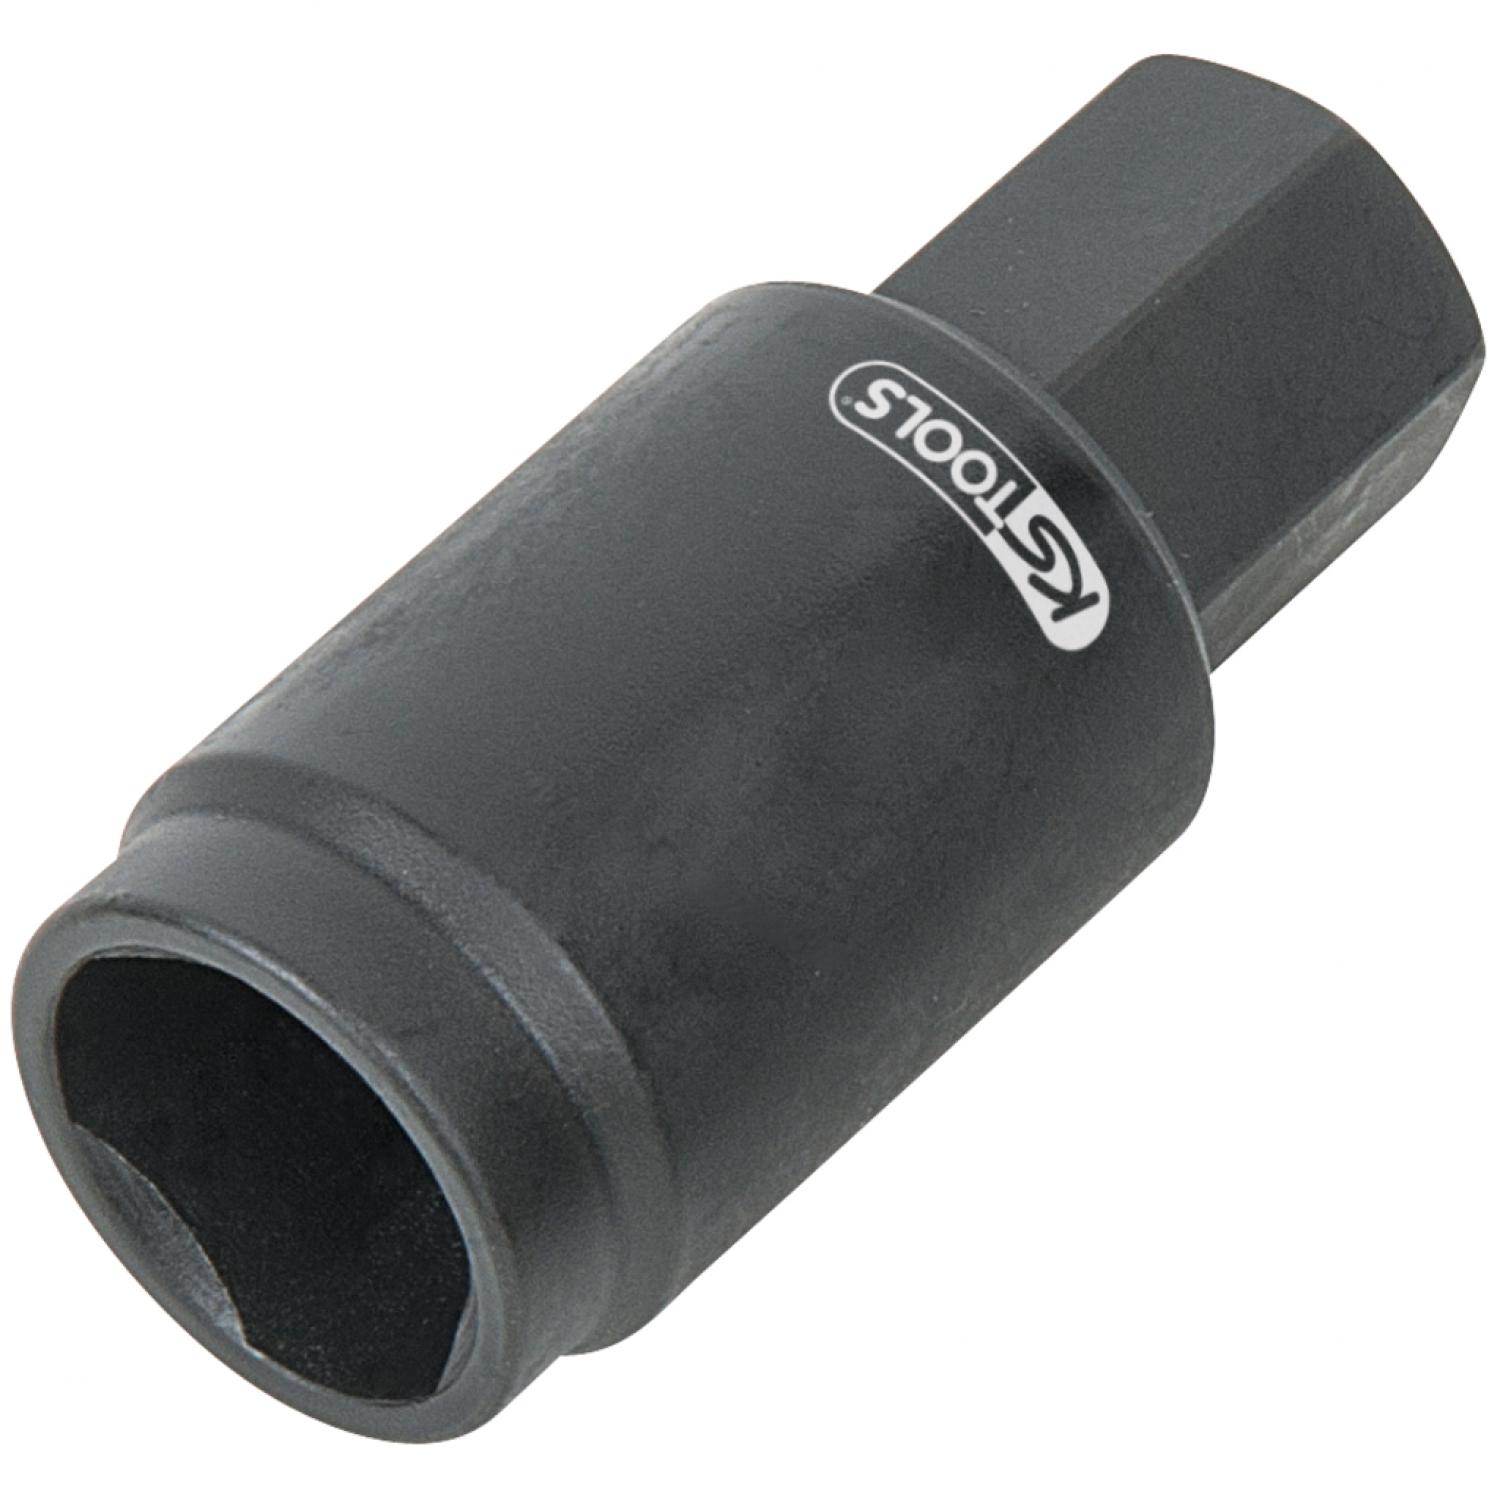 Торцовая головка для впрыскивающего топливного насоса Bosch, Ø 19,7 мм, L = 45 мм